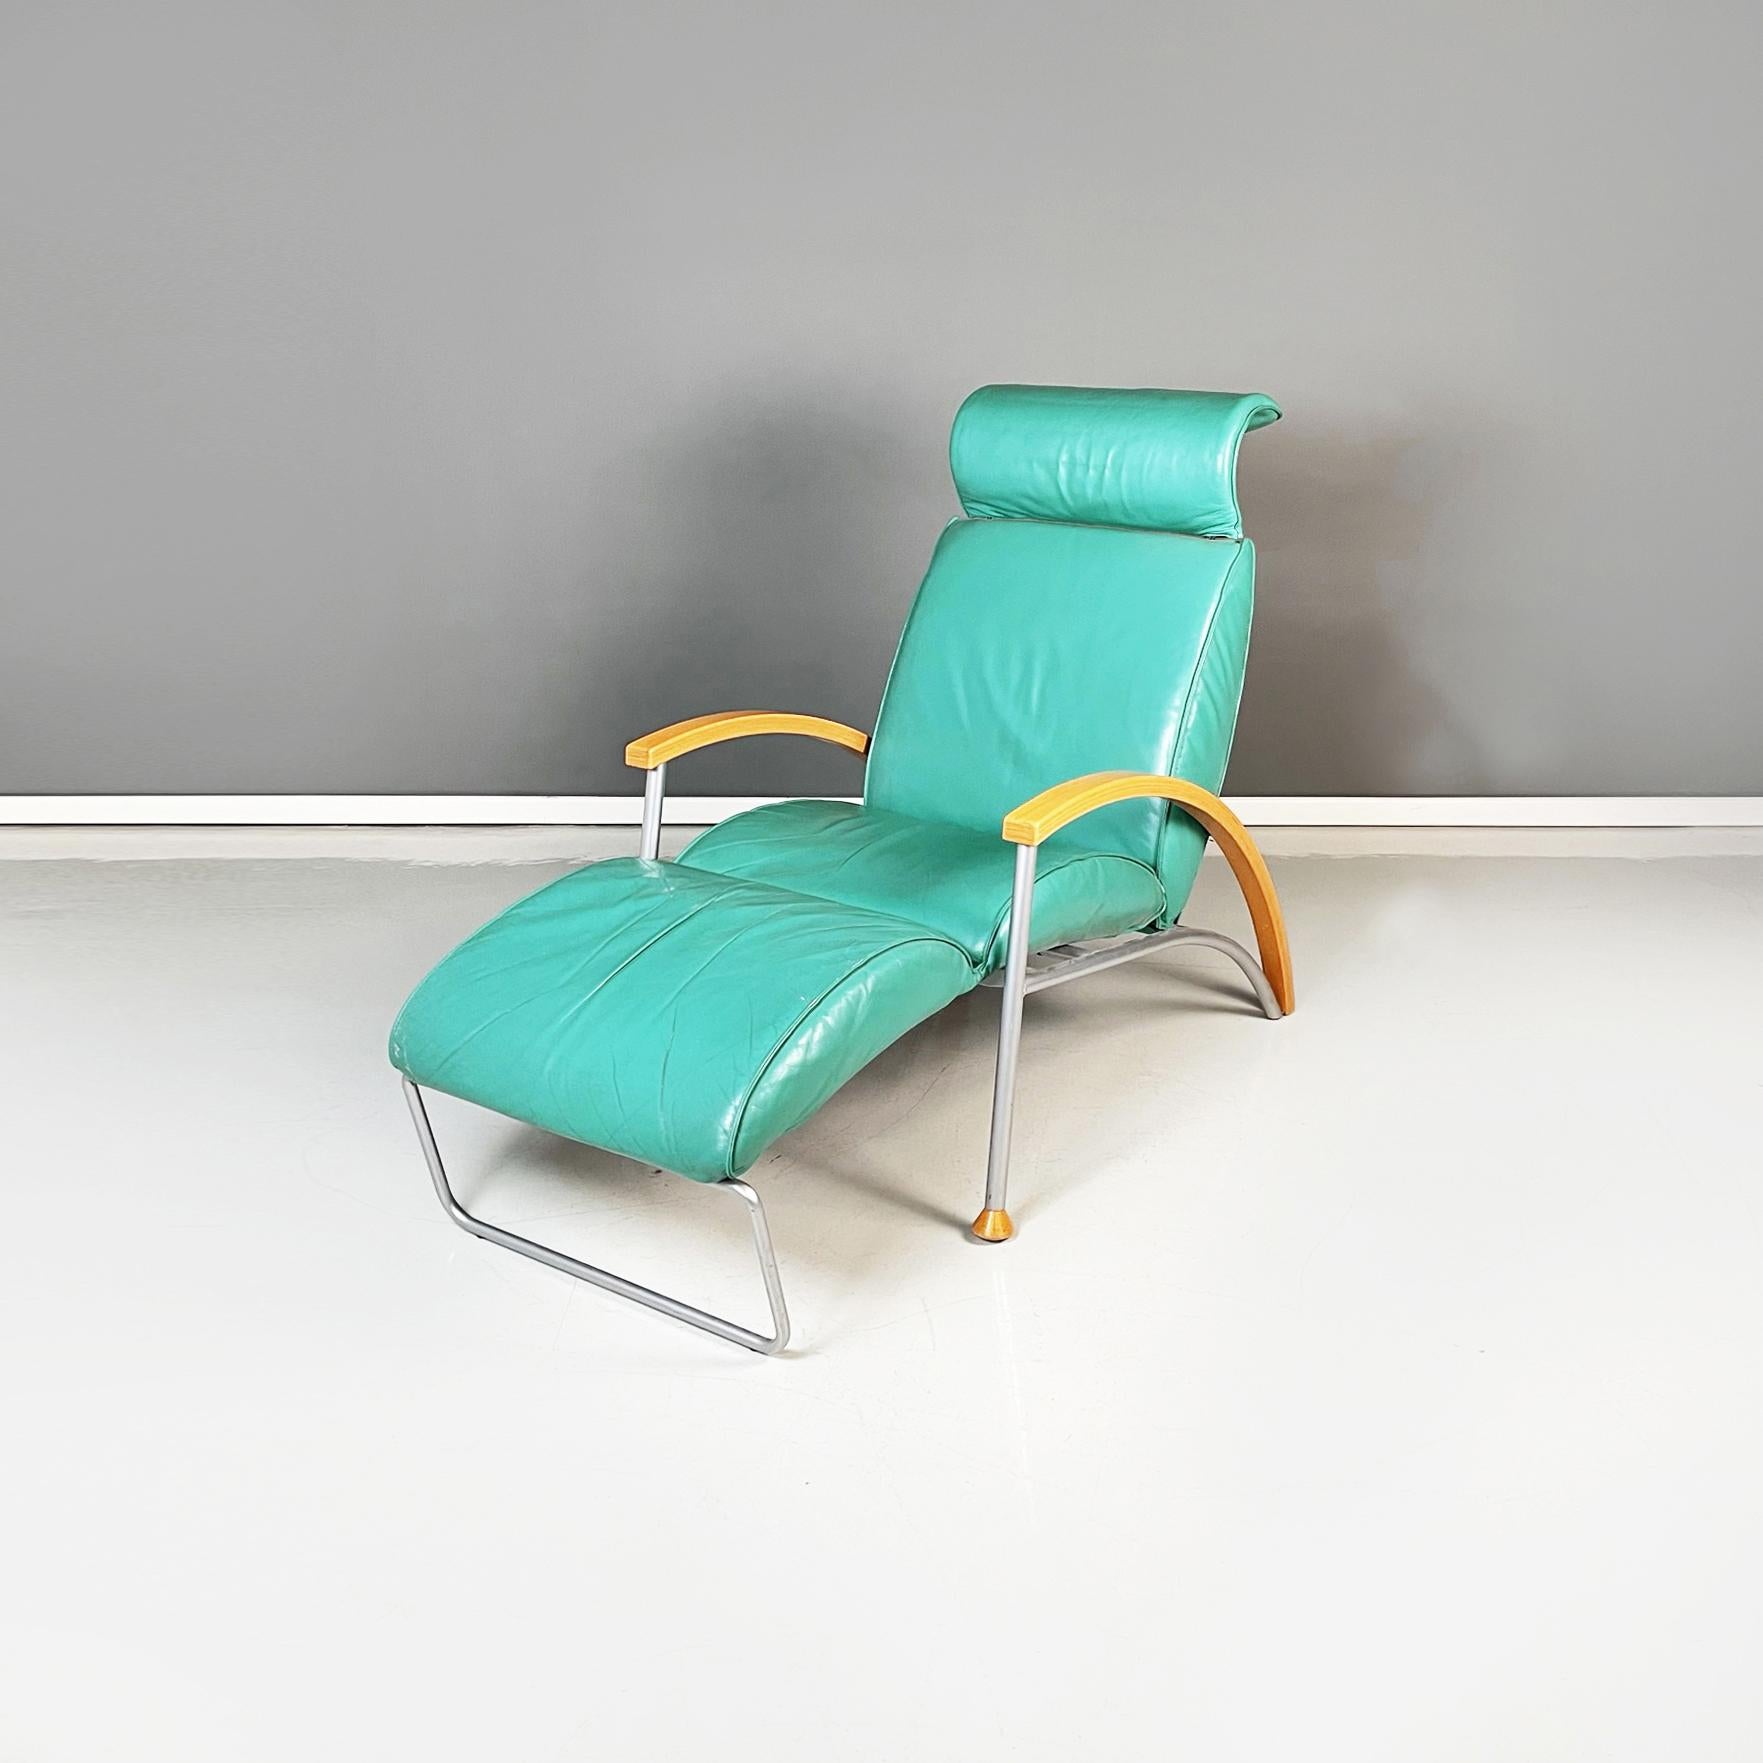 Italienischer moderner Sessel aus aquagrünem Leder, Holz und Metall, 1980er Jahre
Sessel, bezogen mit aquagrünem Leder. Der Sitz ist dank eines manuellen Mechanismus ausziehbar. Die Rückenlehne ist geneigt. Die geschwungenen Armlehnen haben eine